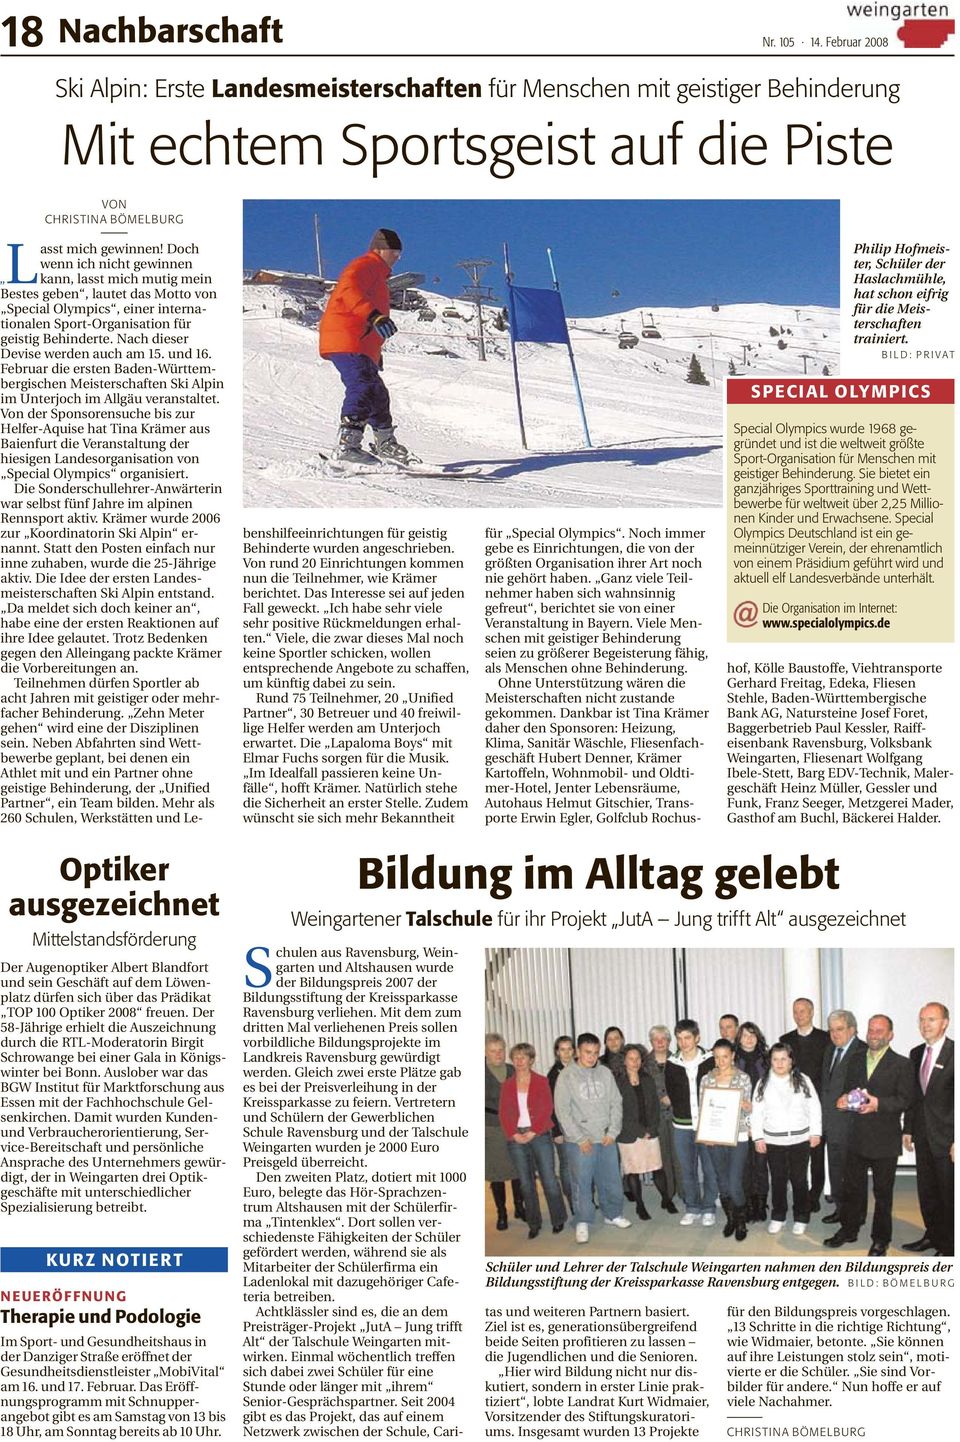 Nach dieser Devise werden auch am 15. und 16. Februar die ersten Baden-Württembergischen Meisterschaften Ski Alpin im Unterjoch im Allgäu veranstaltet.